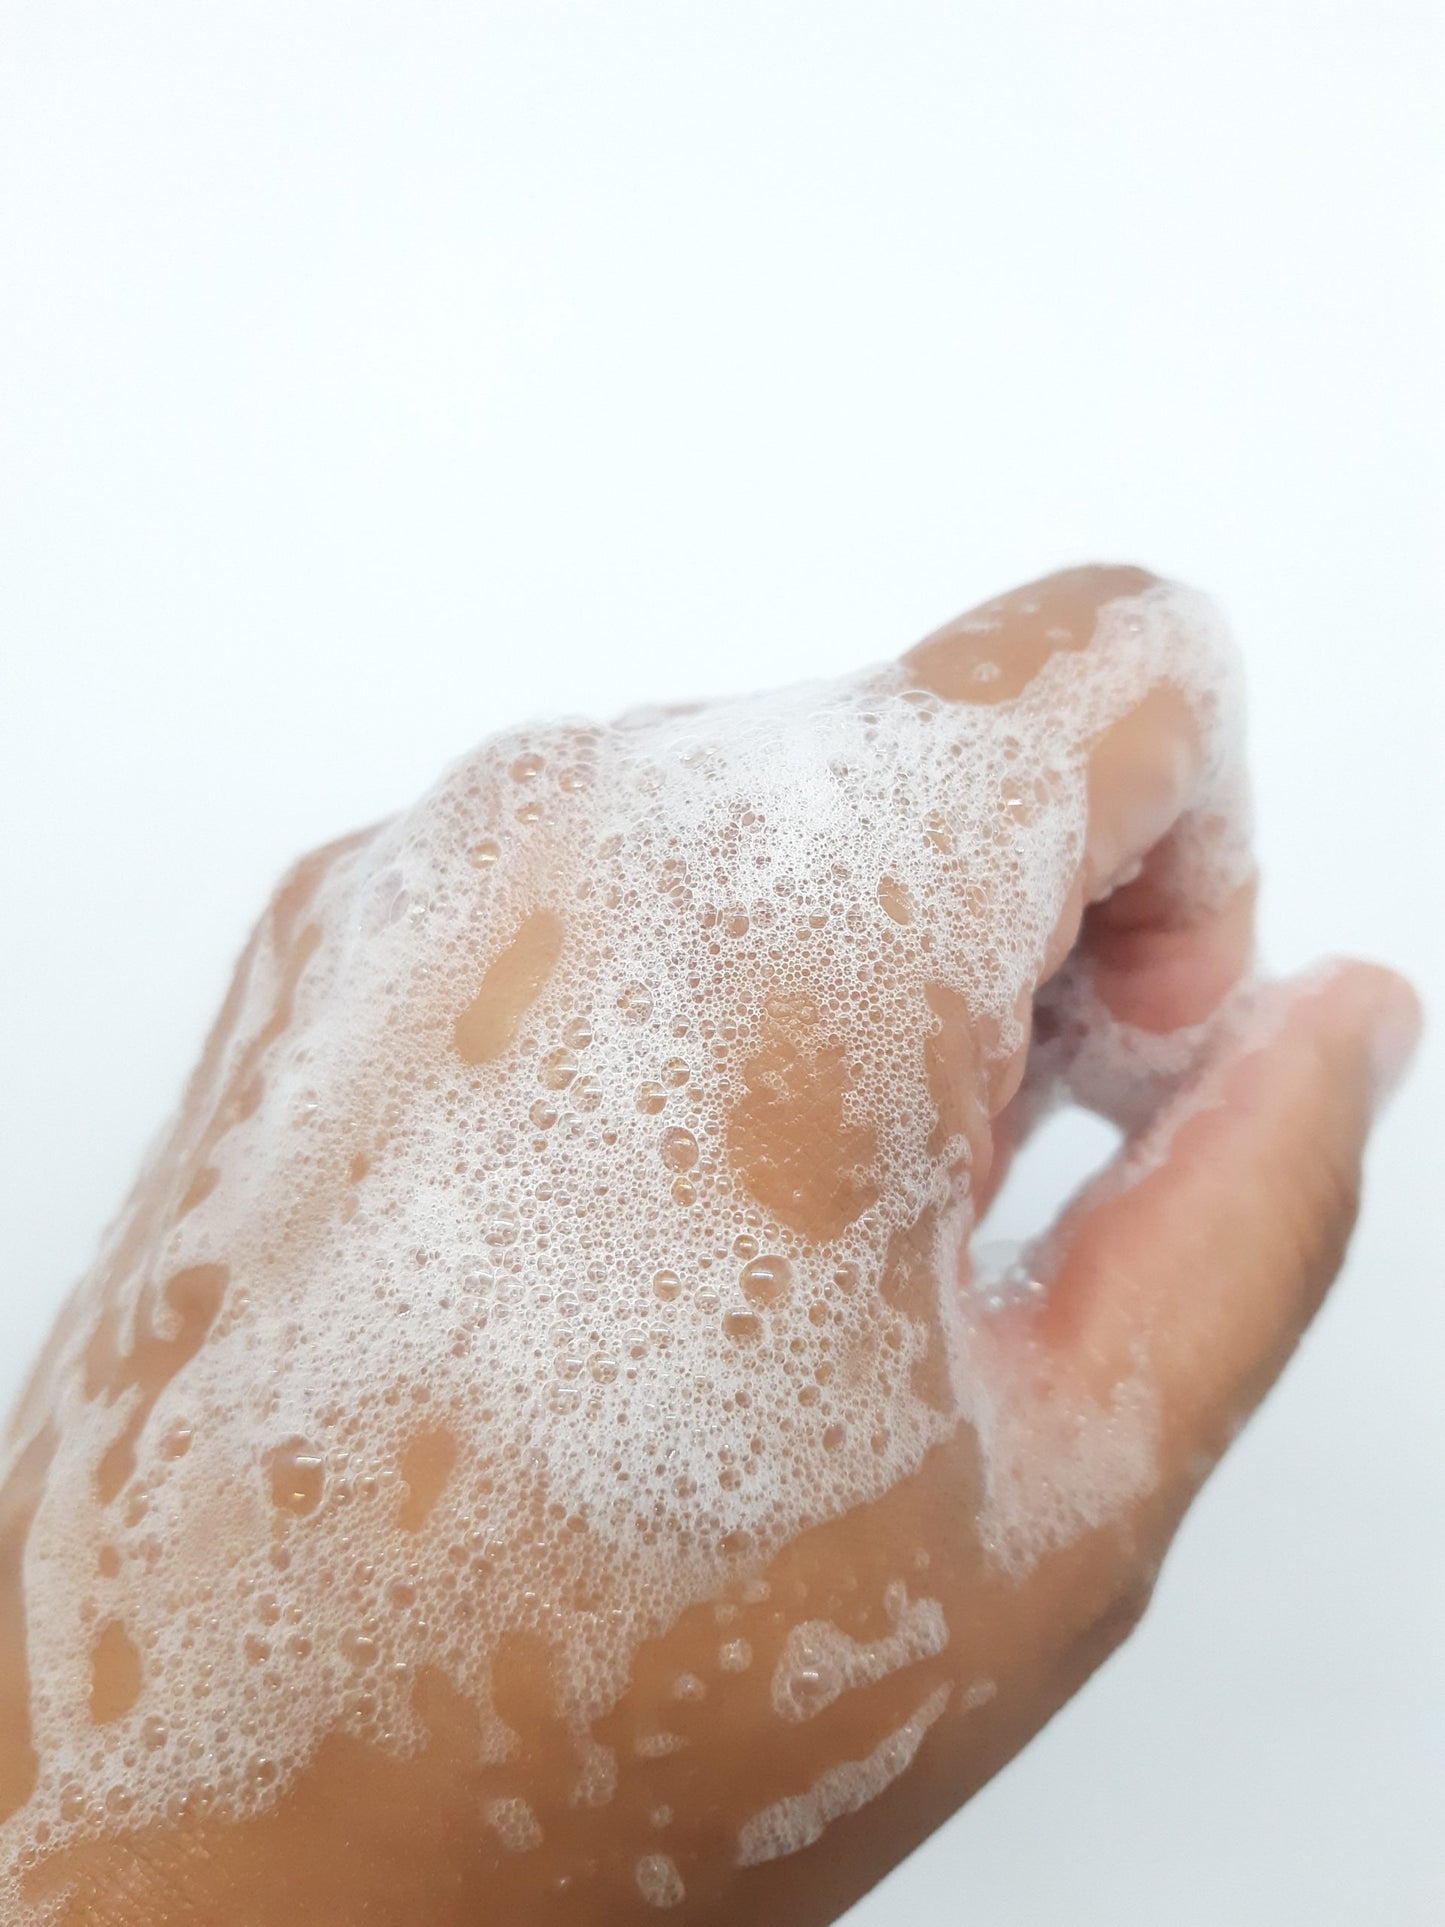 Pure & Simple organic liquid Castile soap - unscented